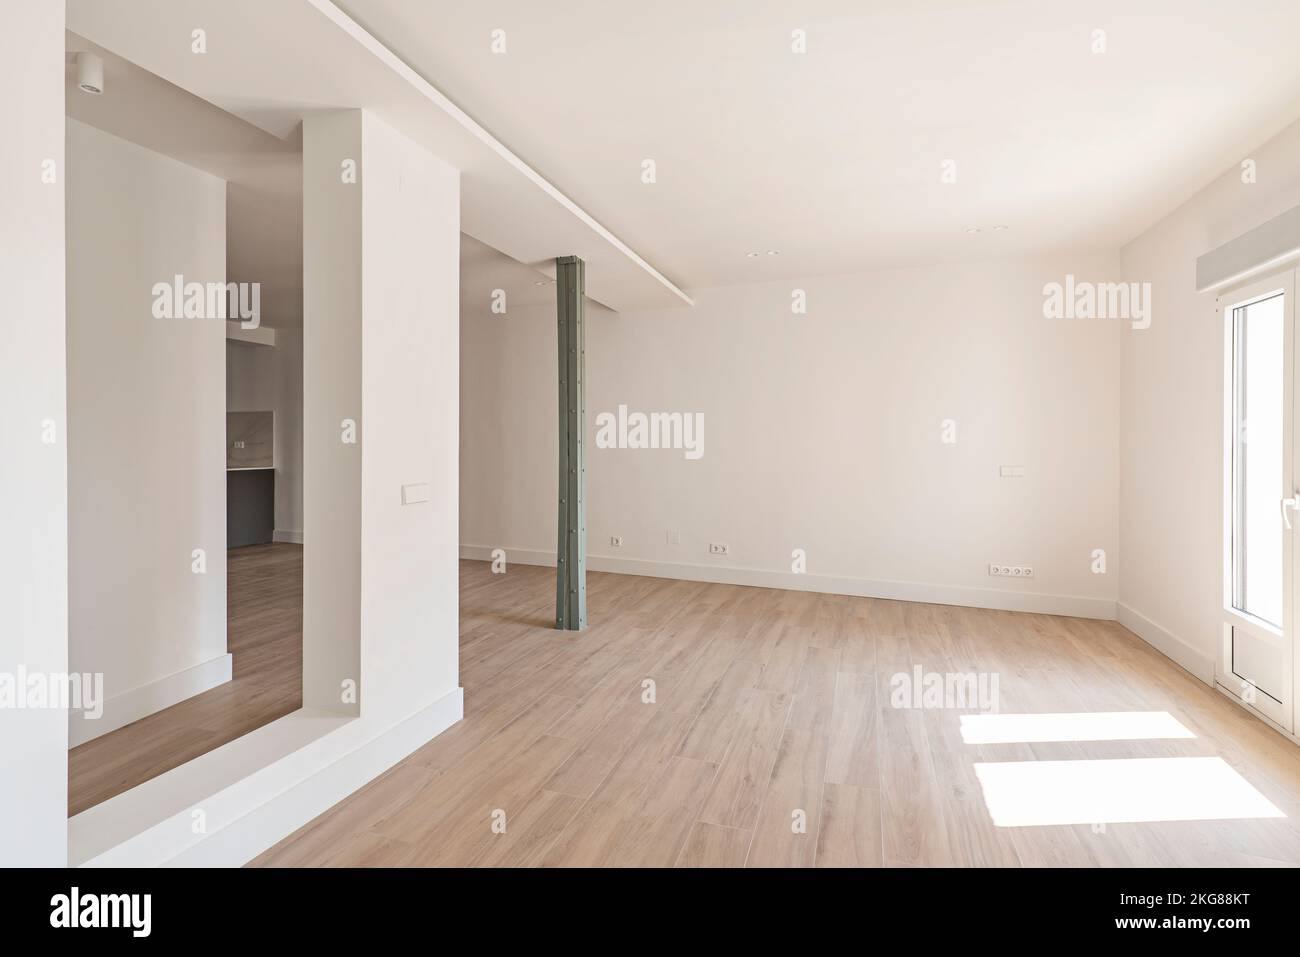 Leerer Raum mit großem, offenem Raum, alten Metallsäulen und minimalistischem Design mit glatten Oberflächen Stockfoto